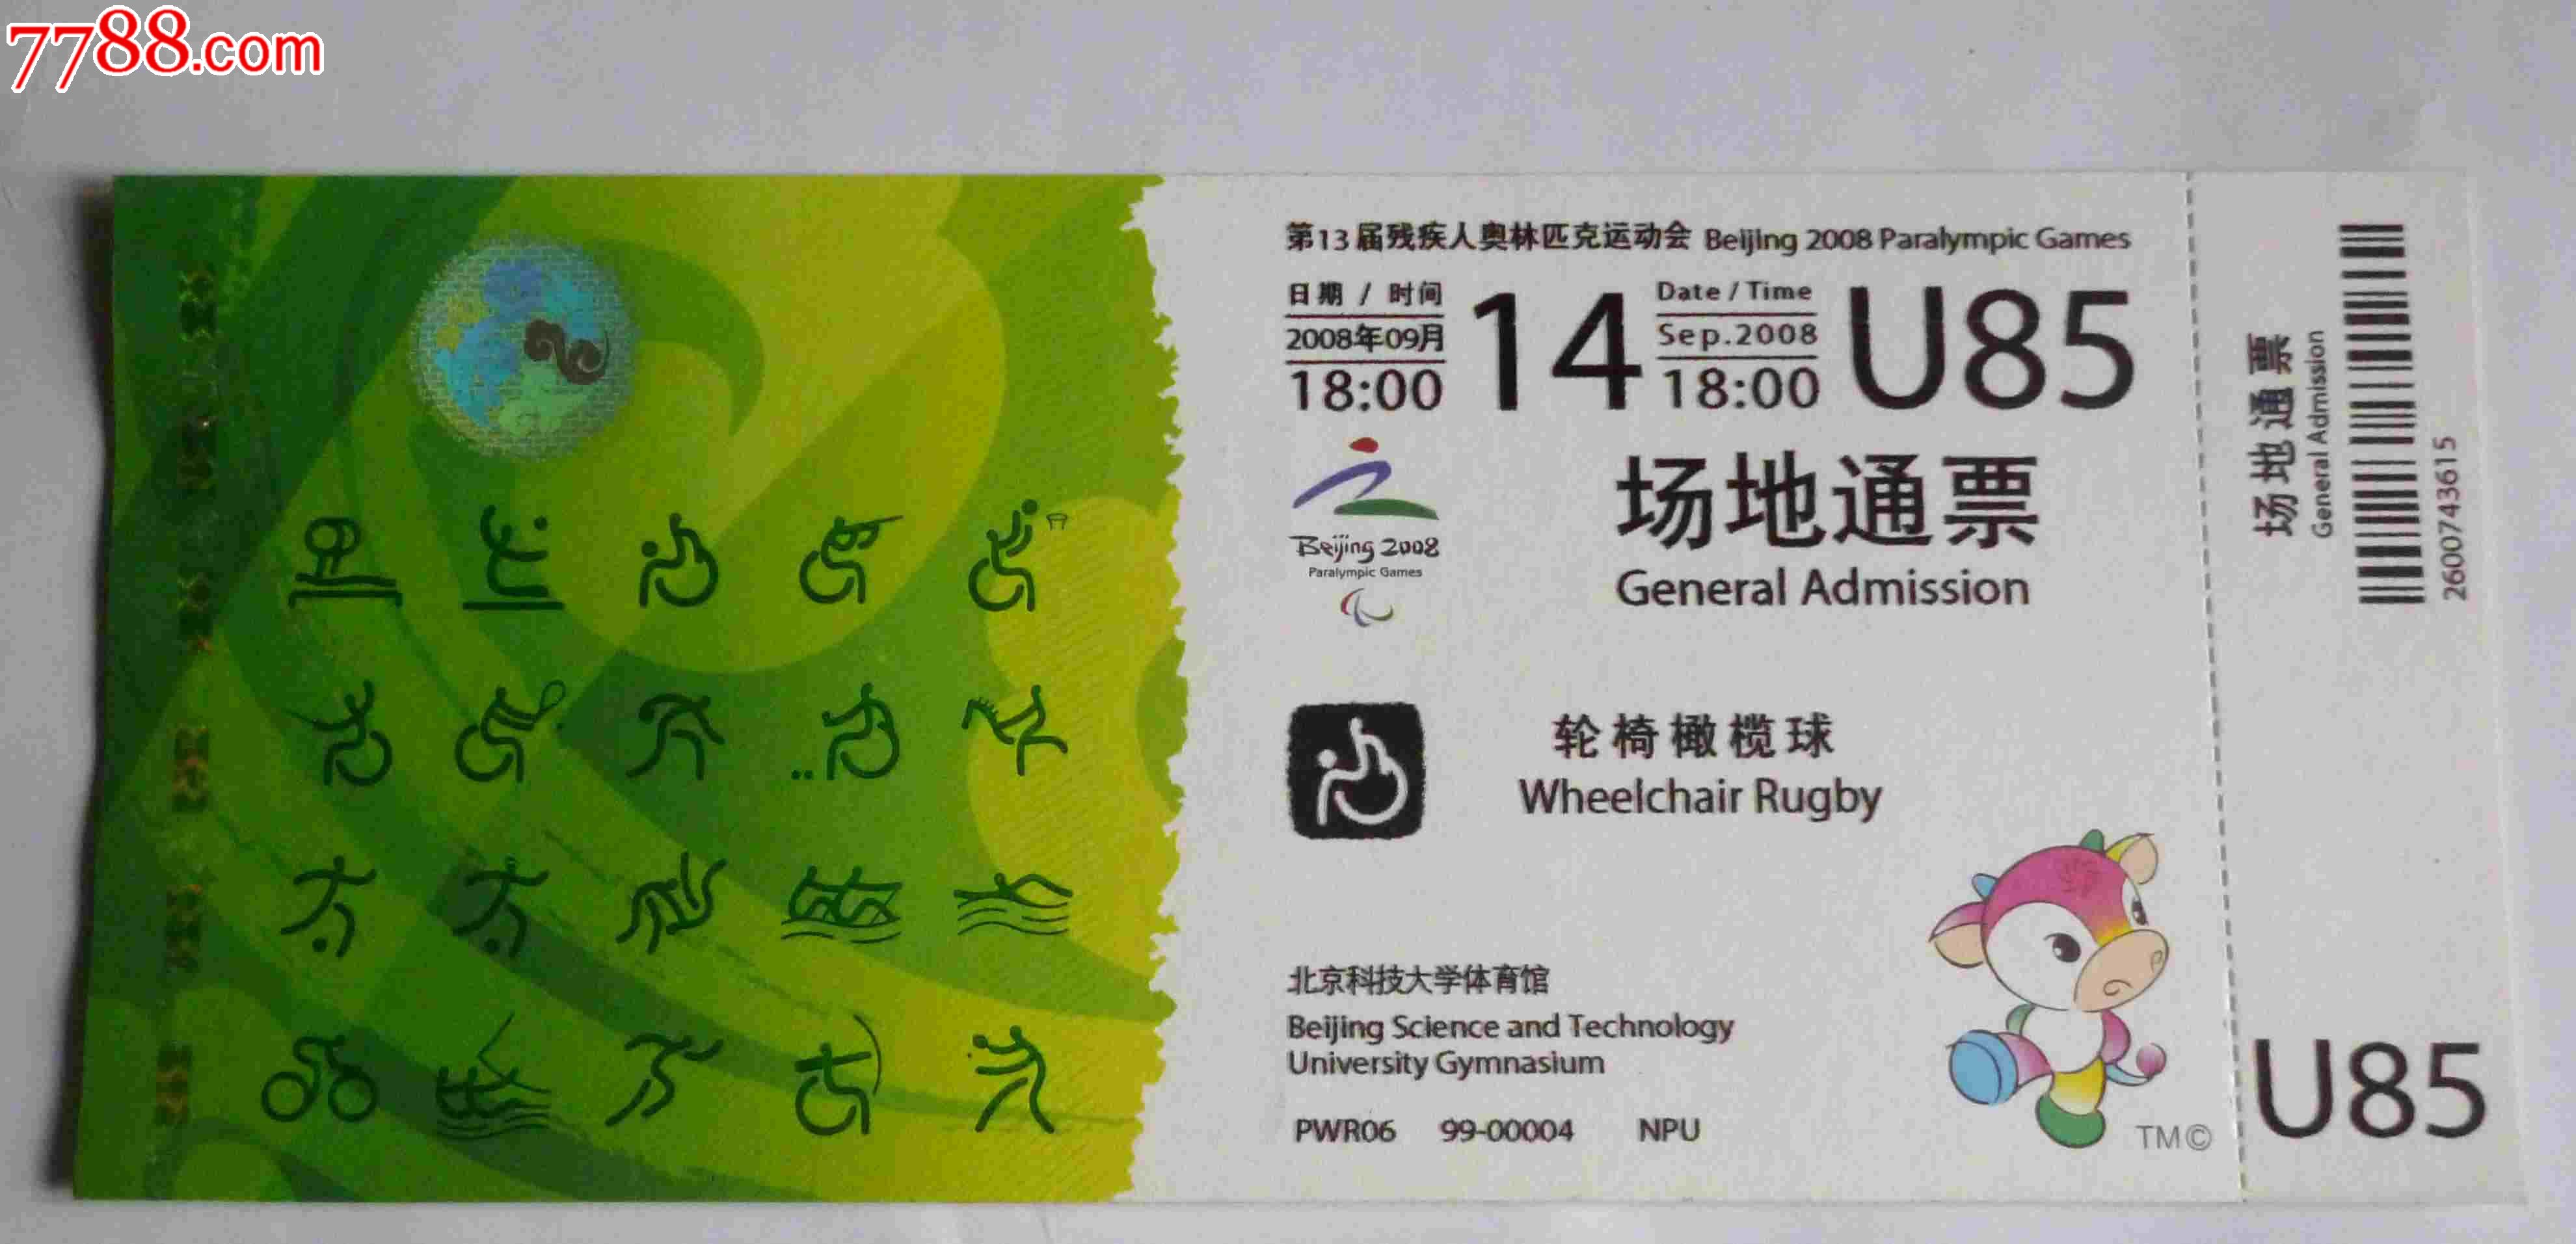 北京残奥会轮椅橄榄球比赛门票-价格:25元-se